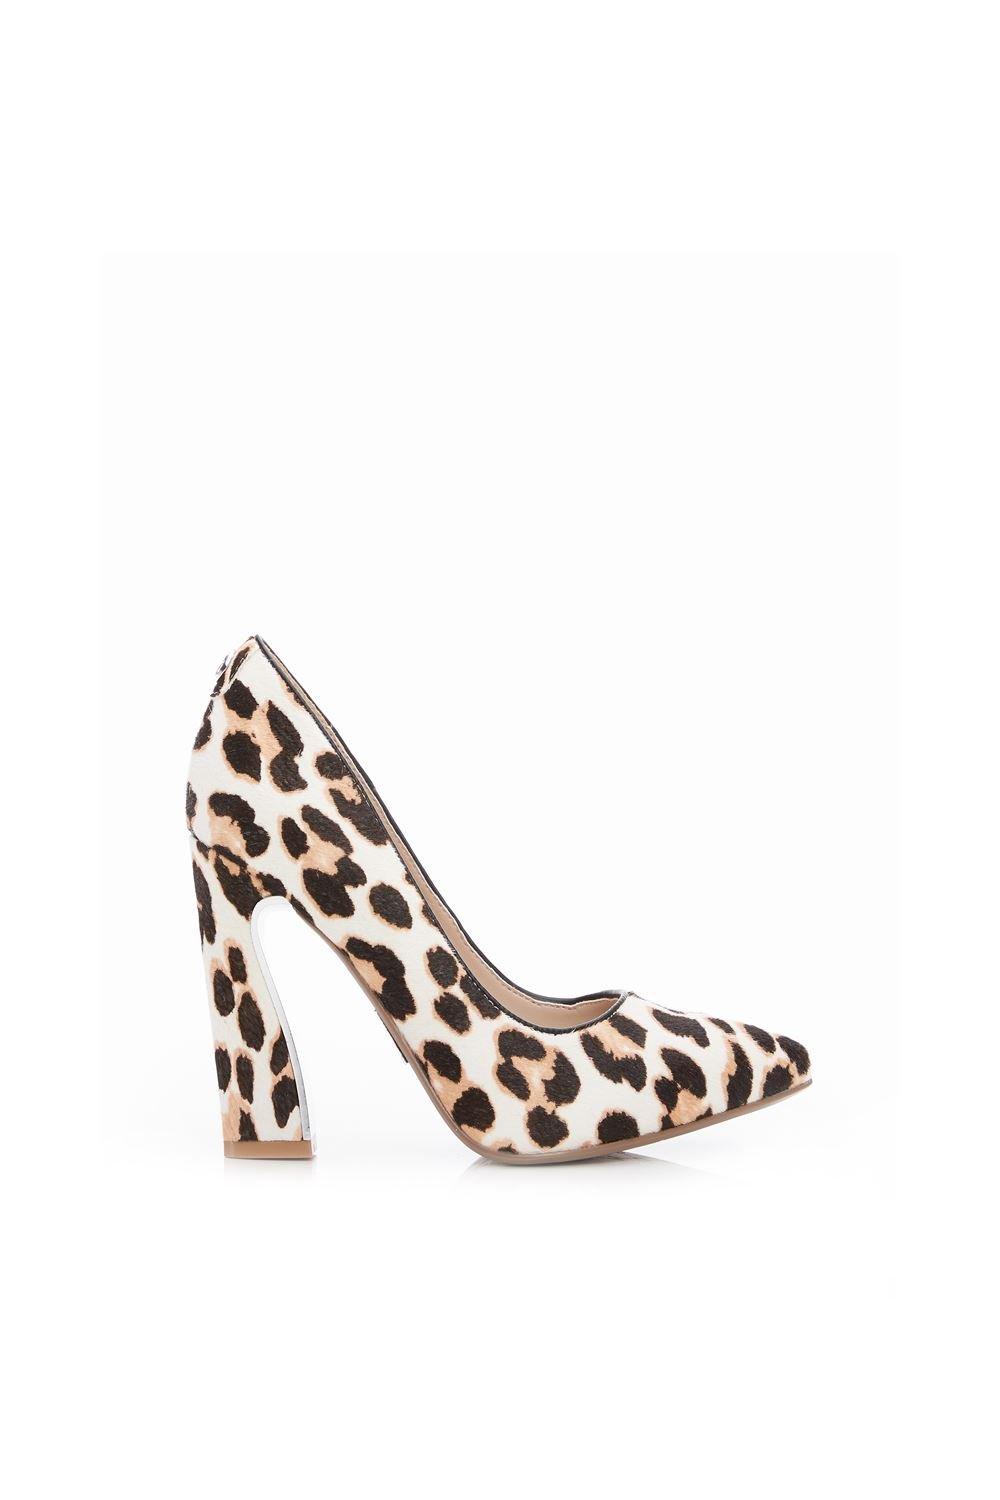 Heels | 'Darlene' Leopard Pony Court Shoes | Moda In Pelle